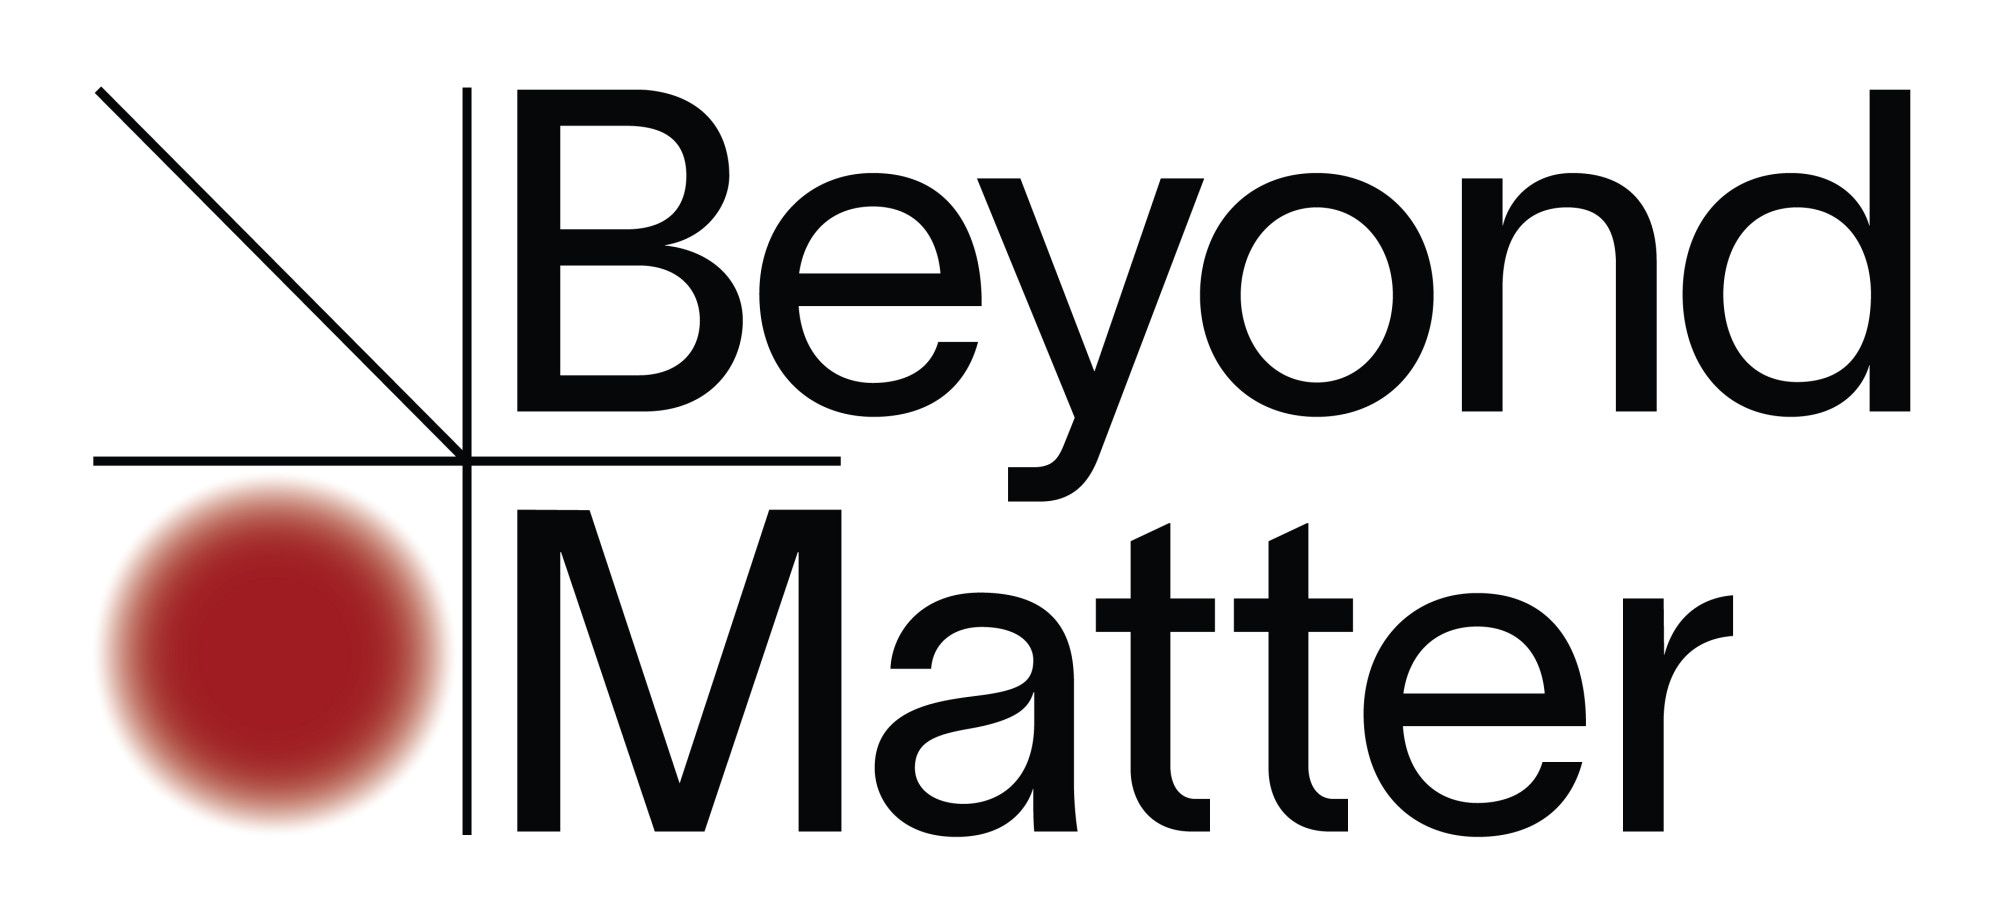 Beyond Matter